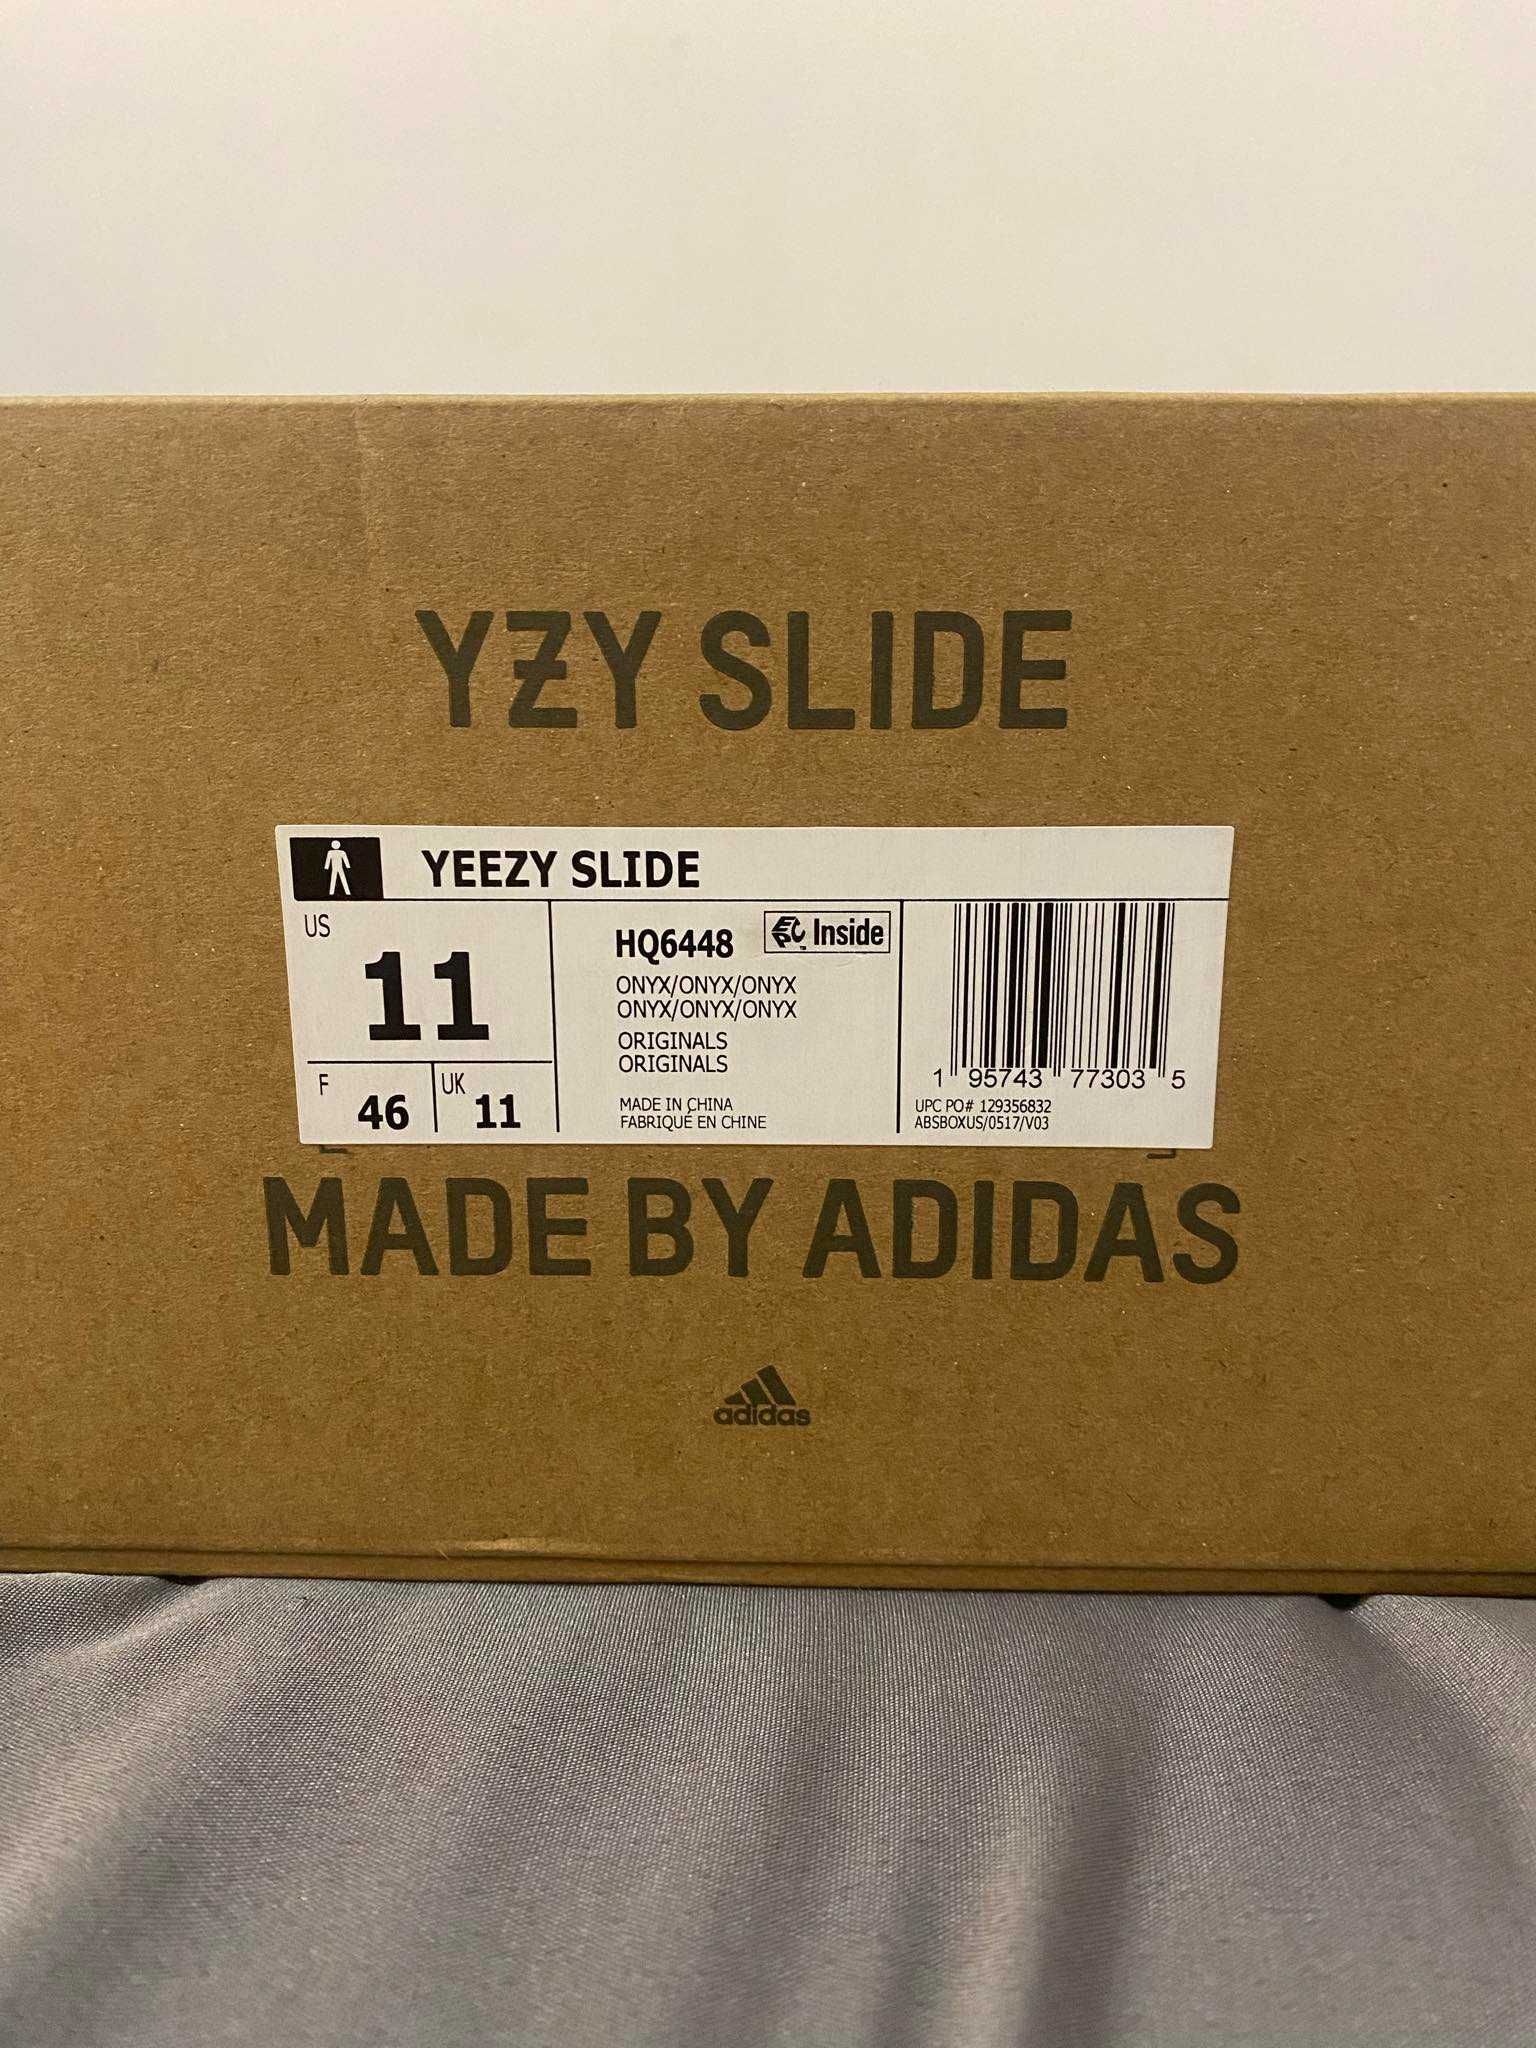 Adidas yeezy slide 46